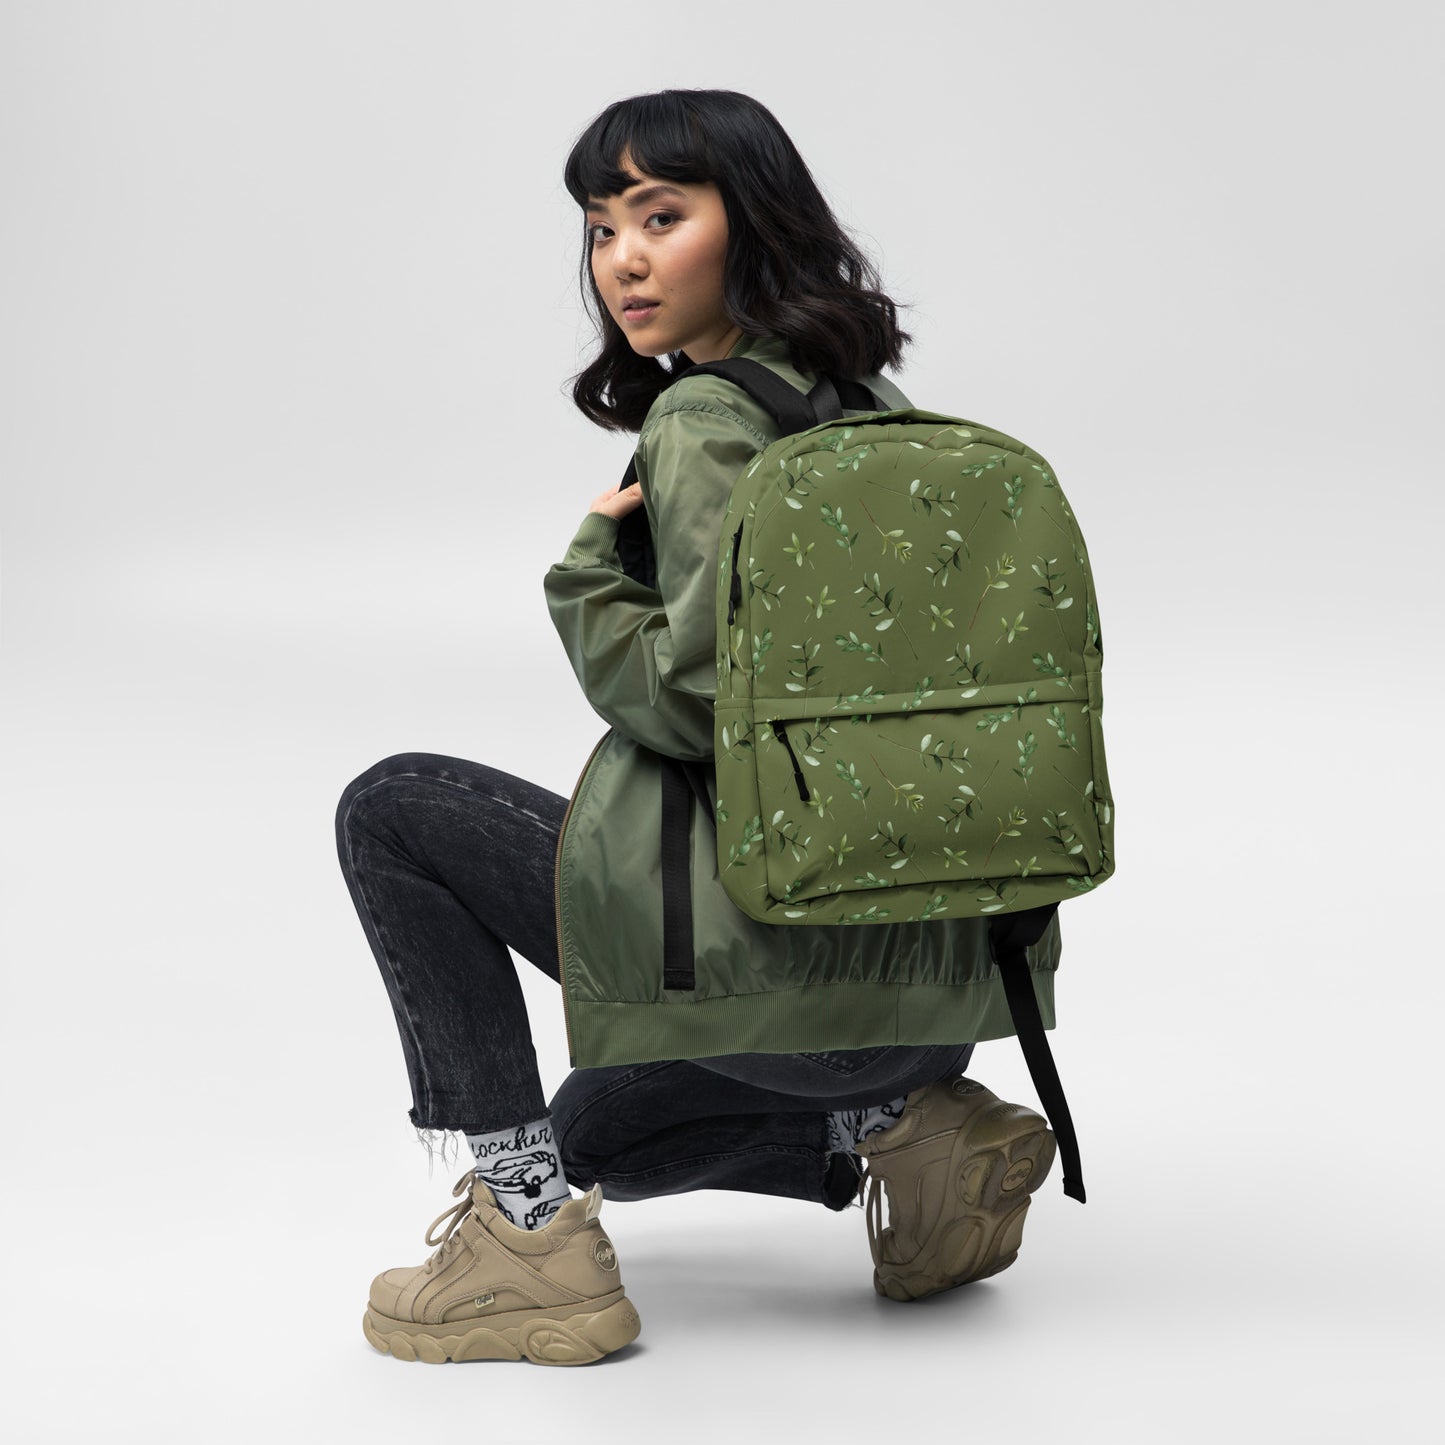 Greenery Wood Green Backpack